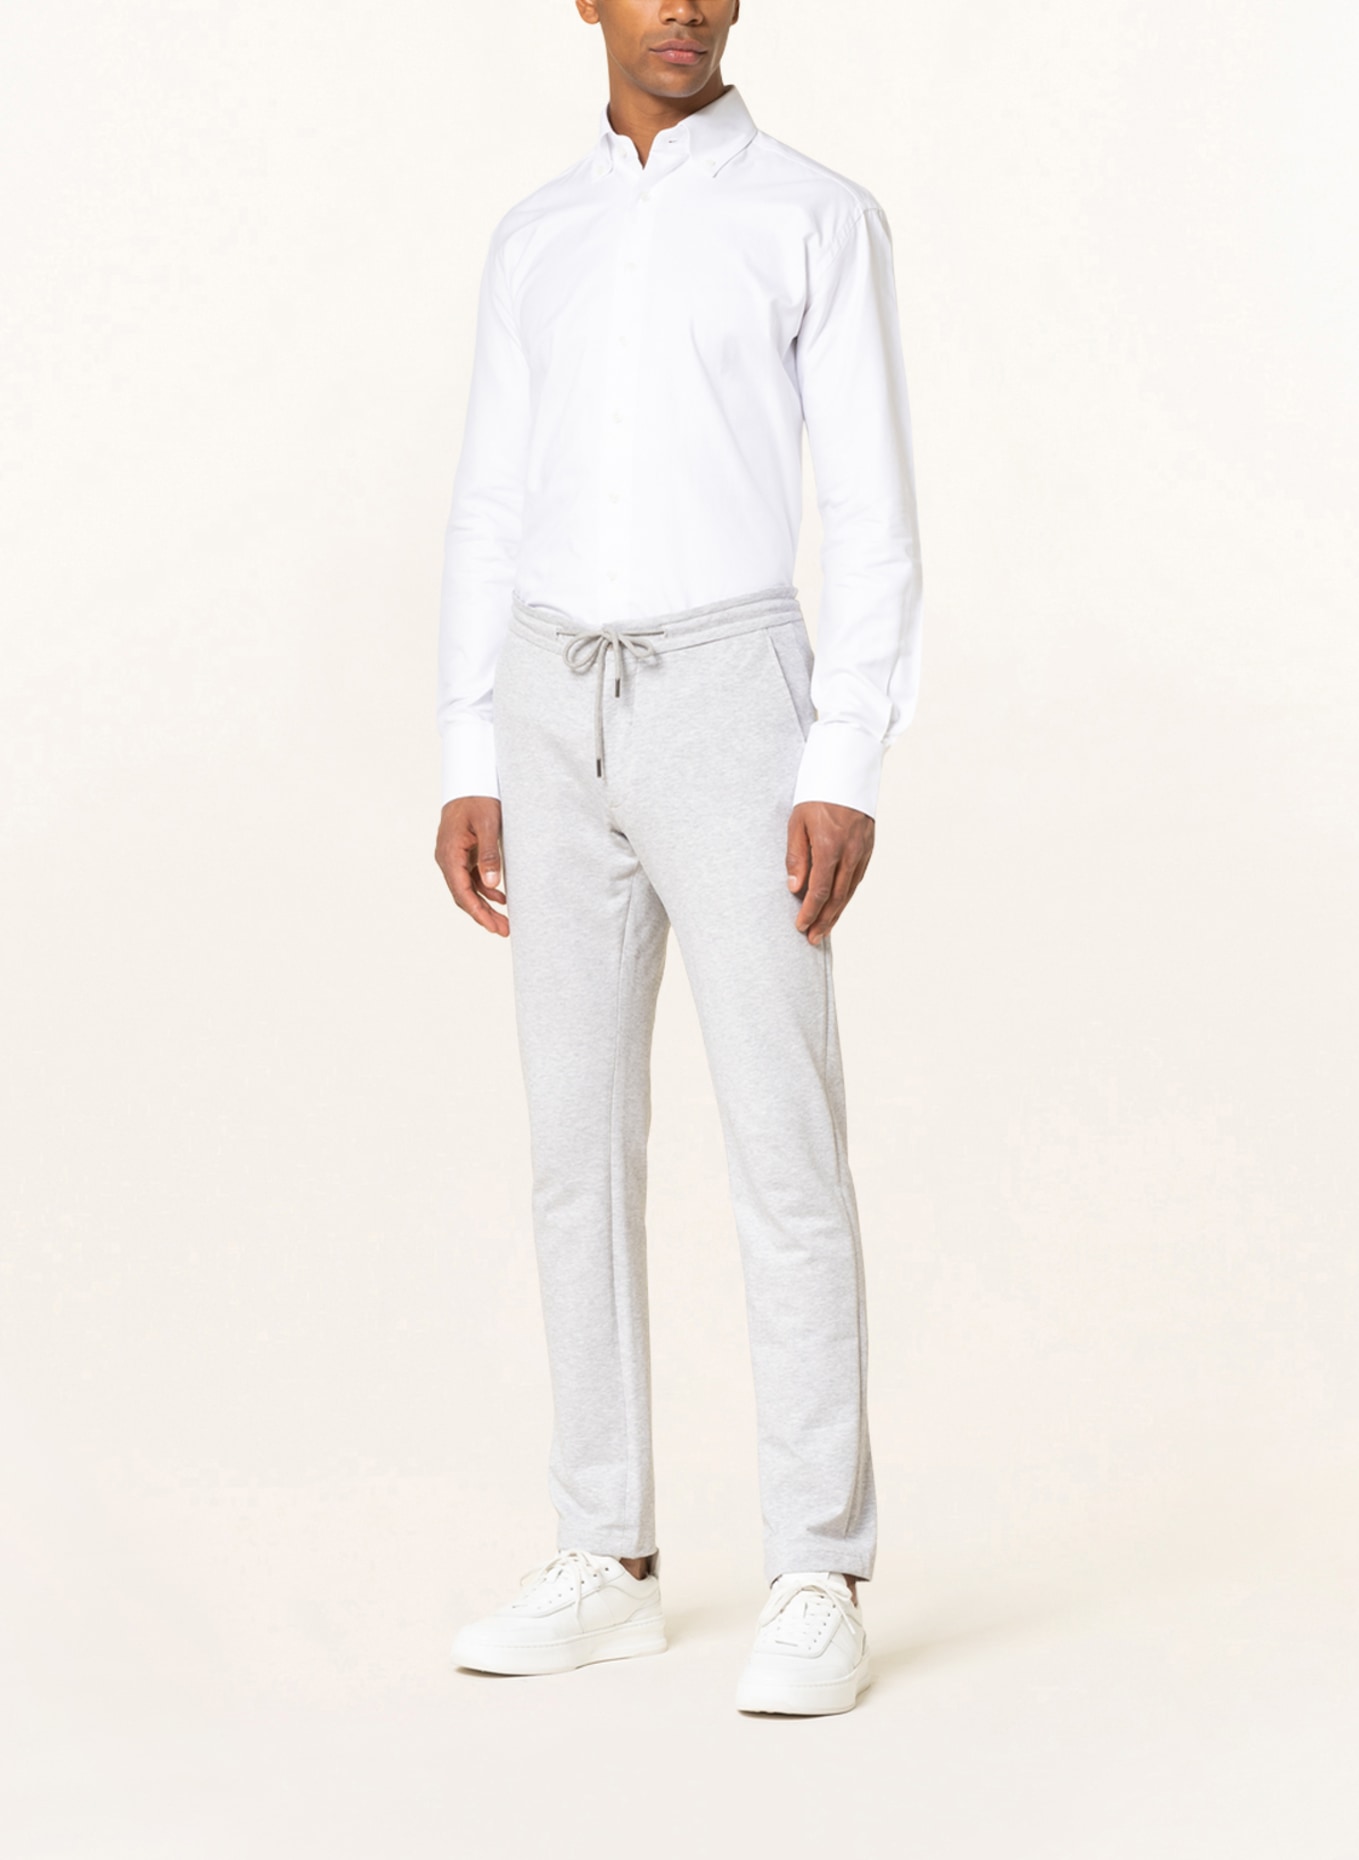 ARTIGIANO Piqué shirt classic fit , Color: WHITE (Image 2)